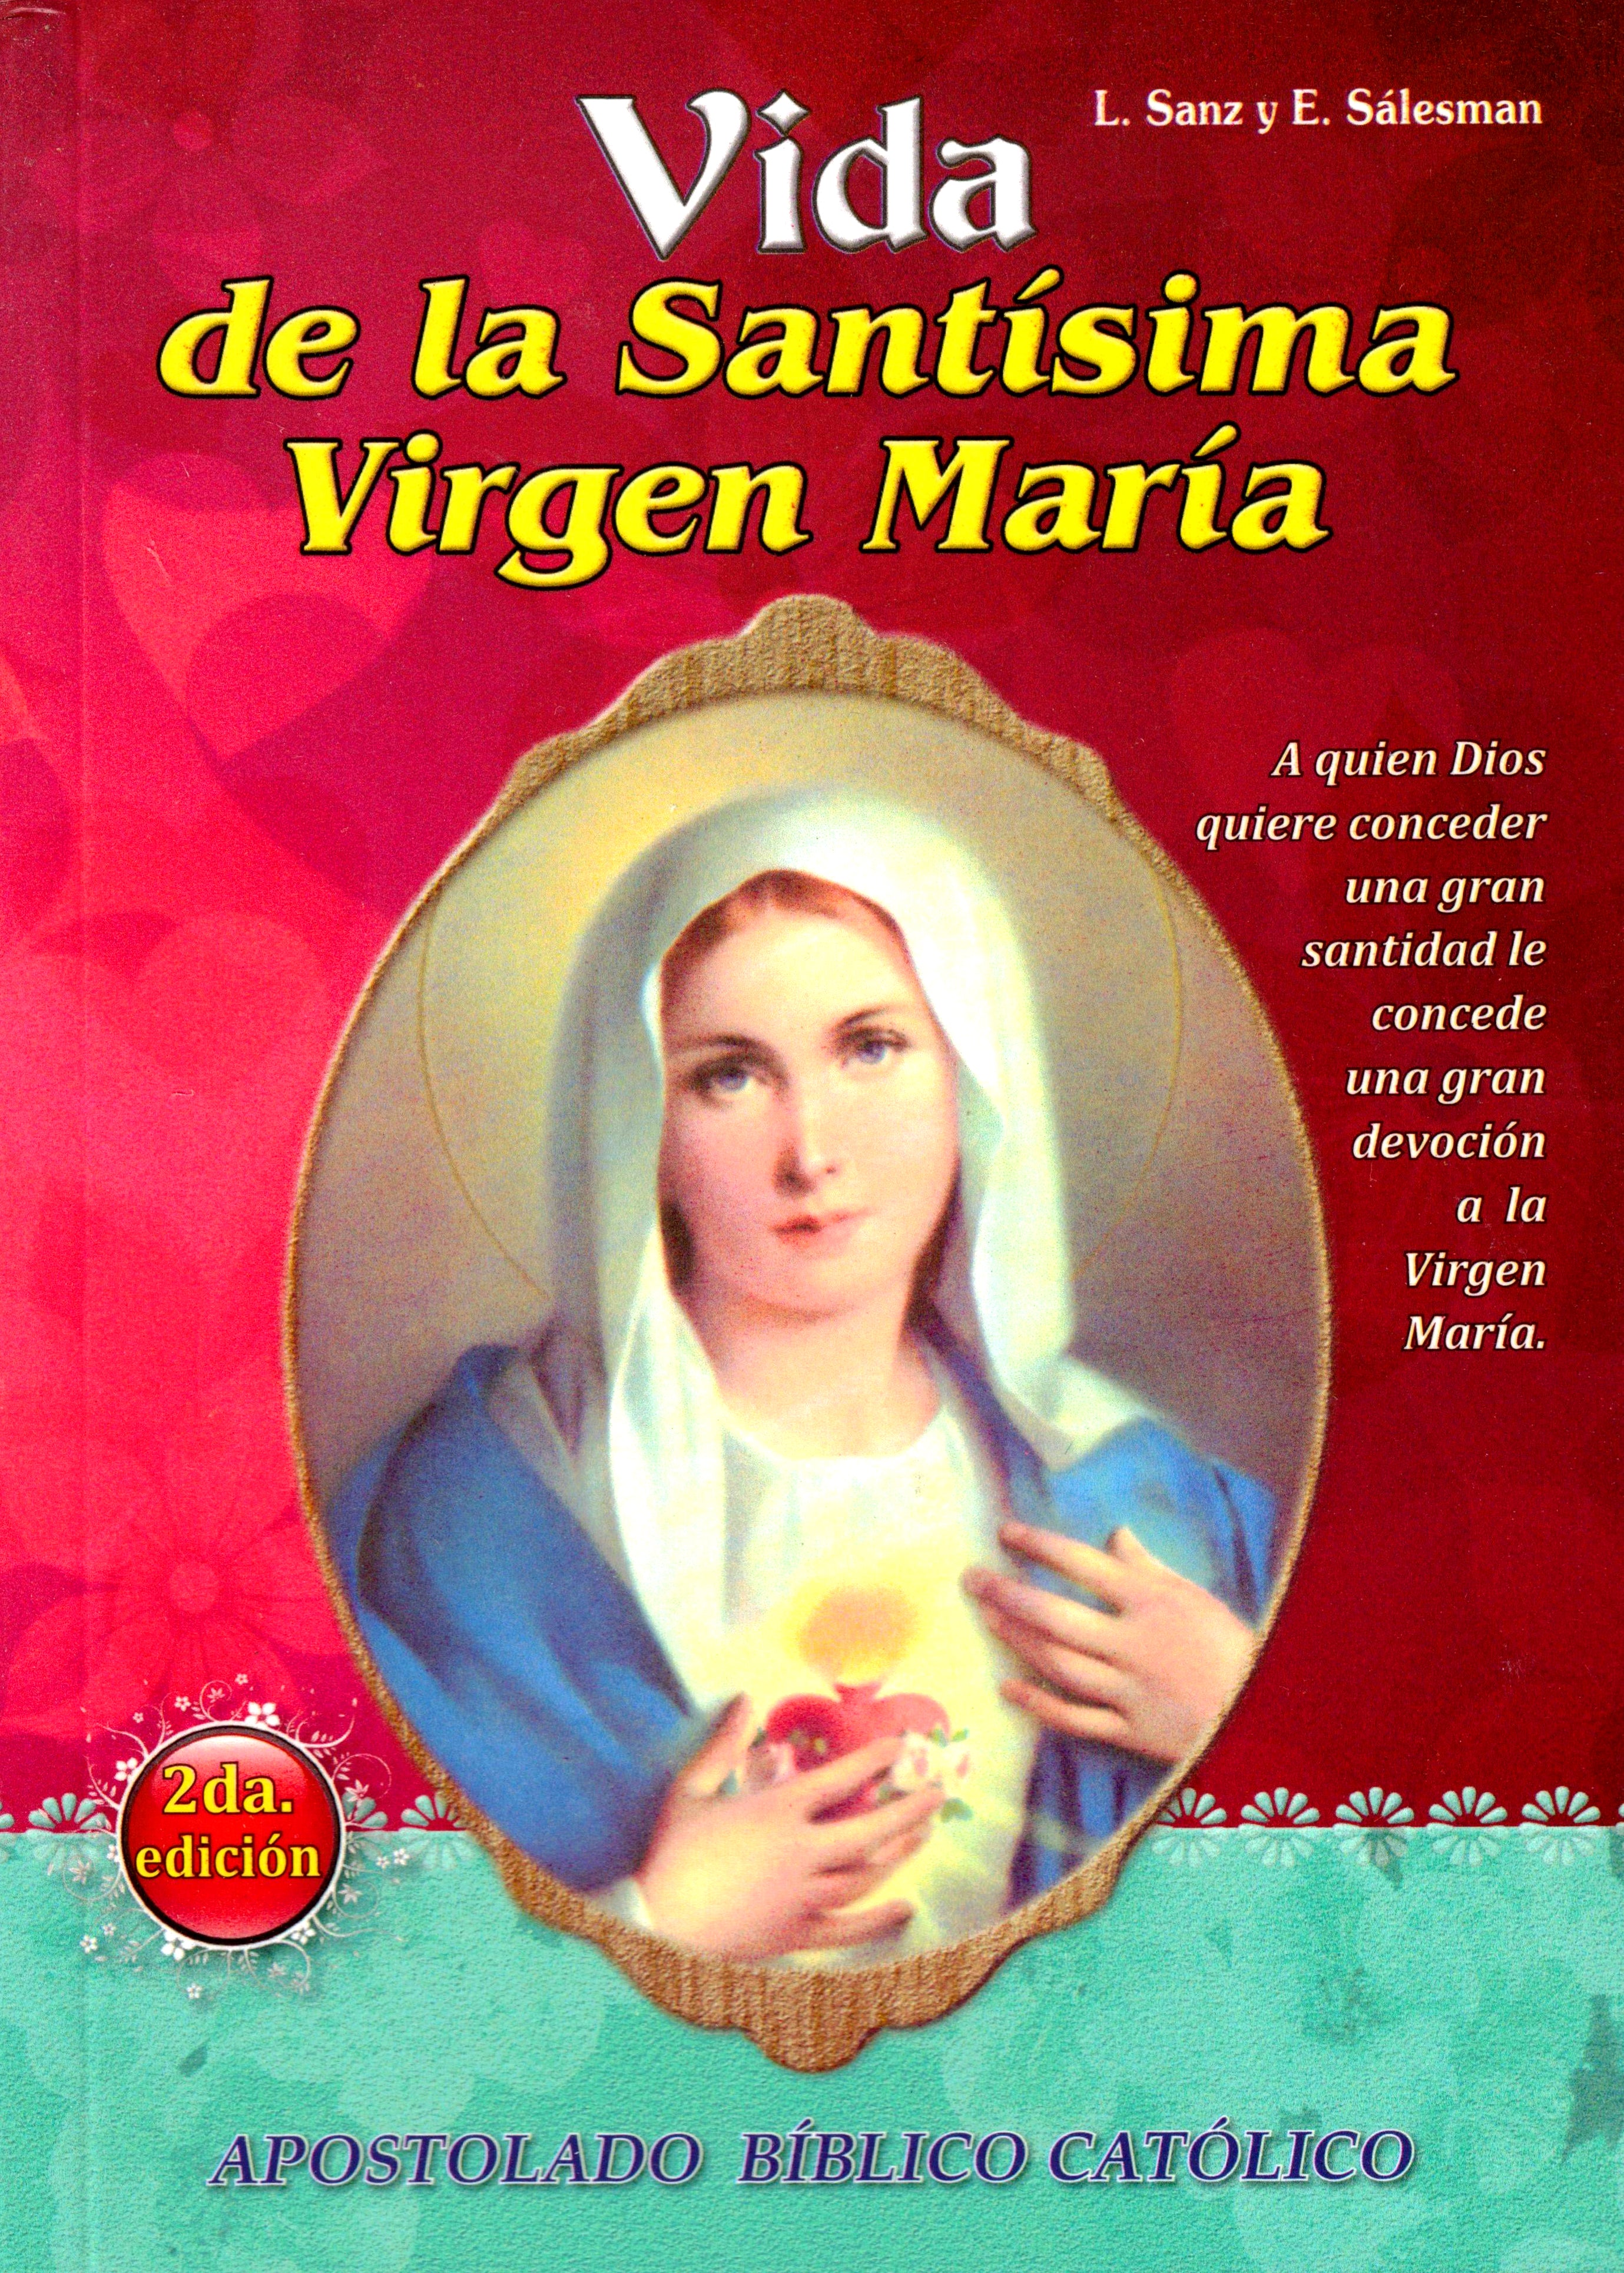 Vida de la Santísima Virgen María